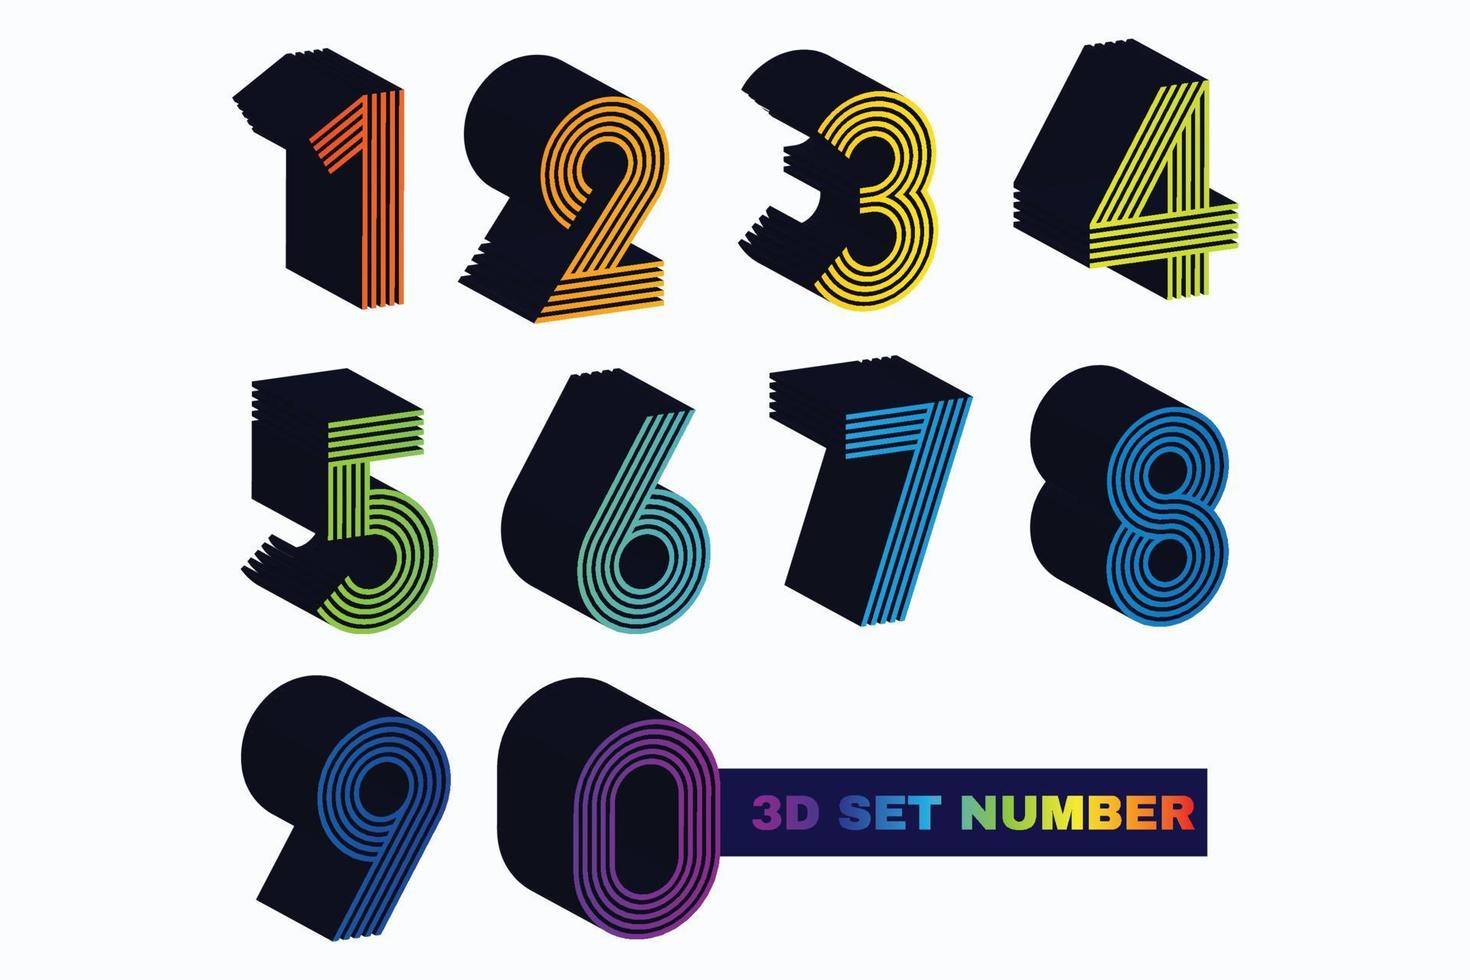 gradiente conjunto de vetores de números 3d. Personagens 3D realistas. elementos decorativos para banner, capa, aniversário ou festa de aniversário.